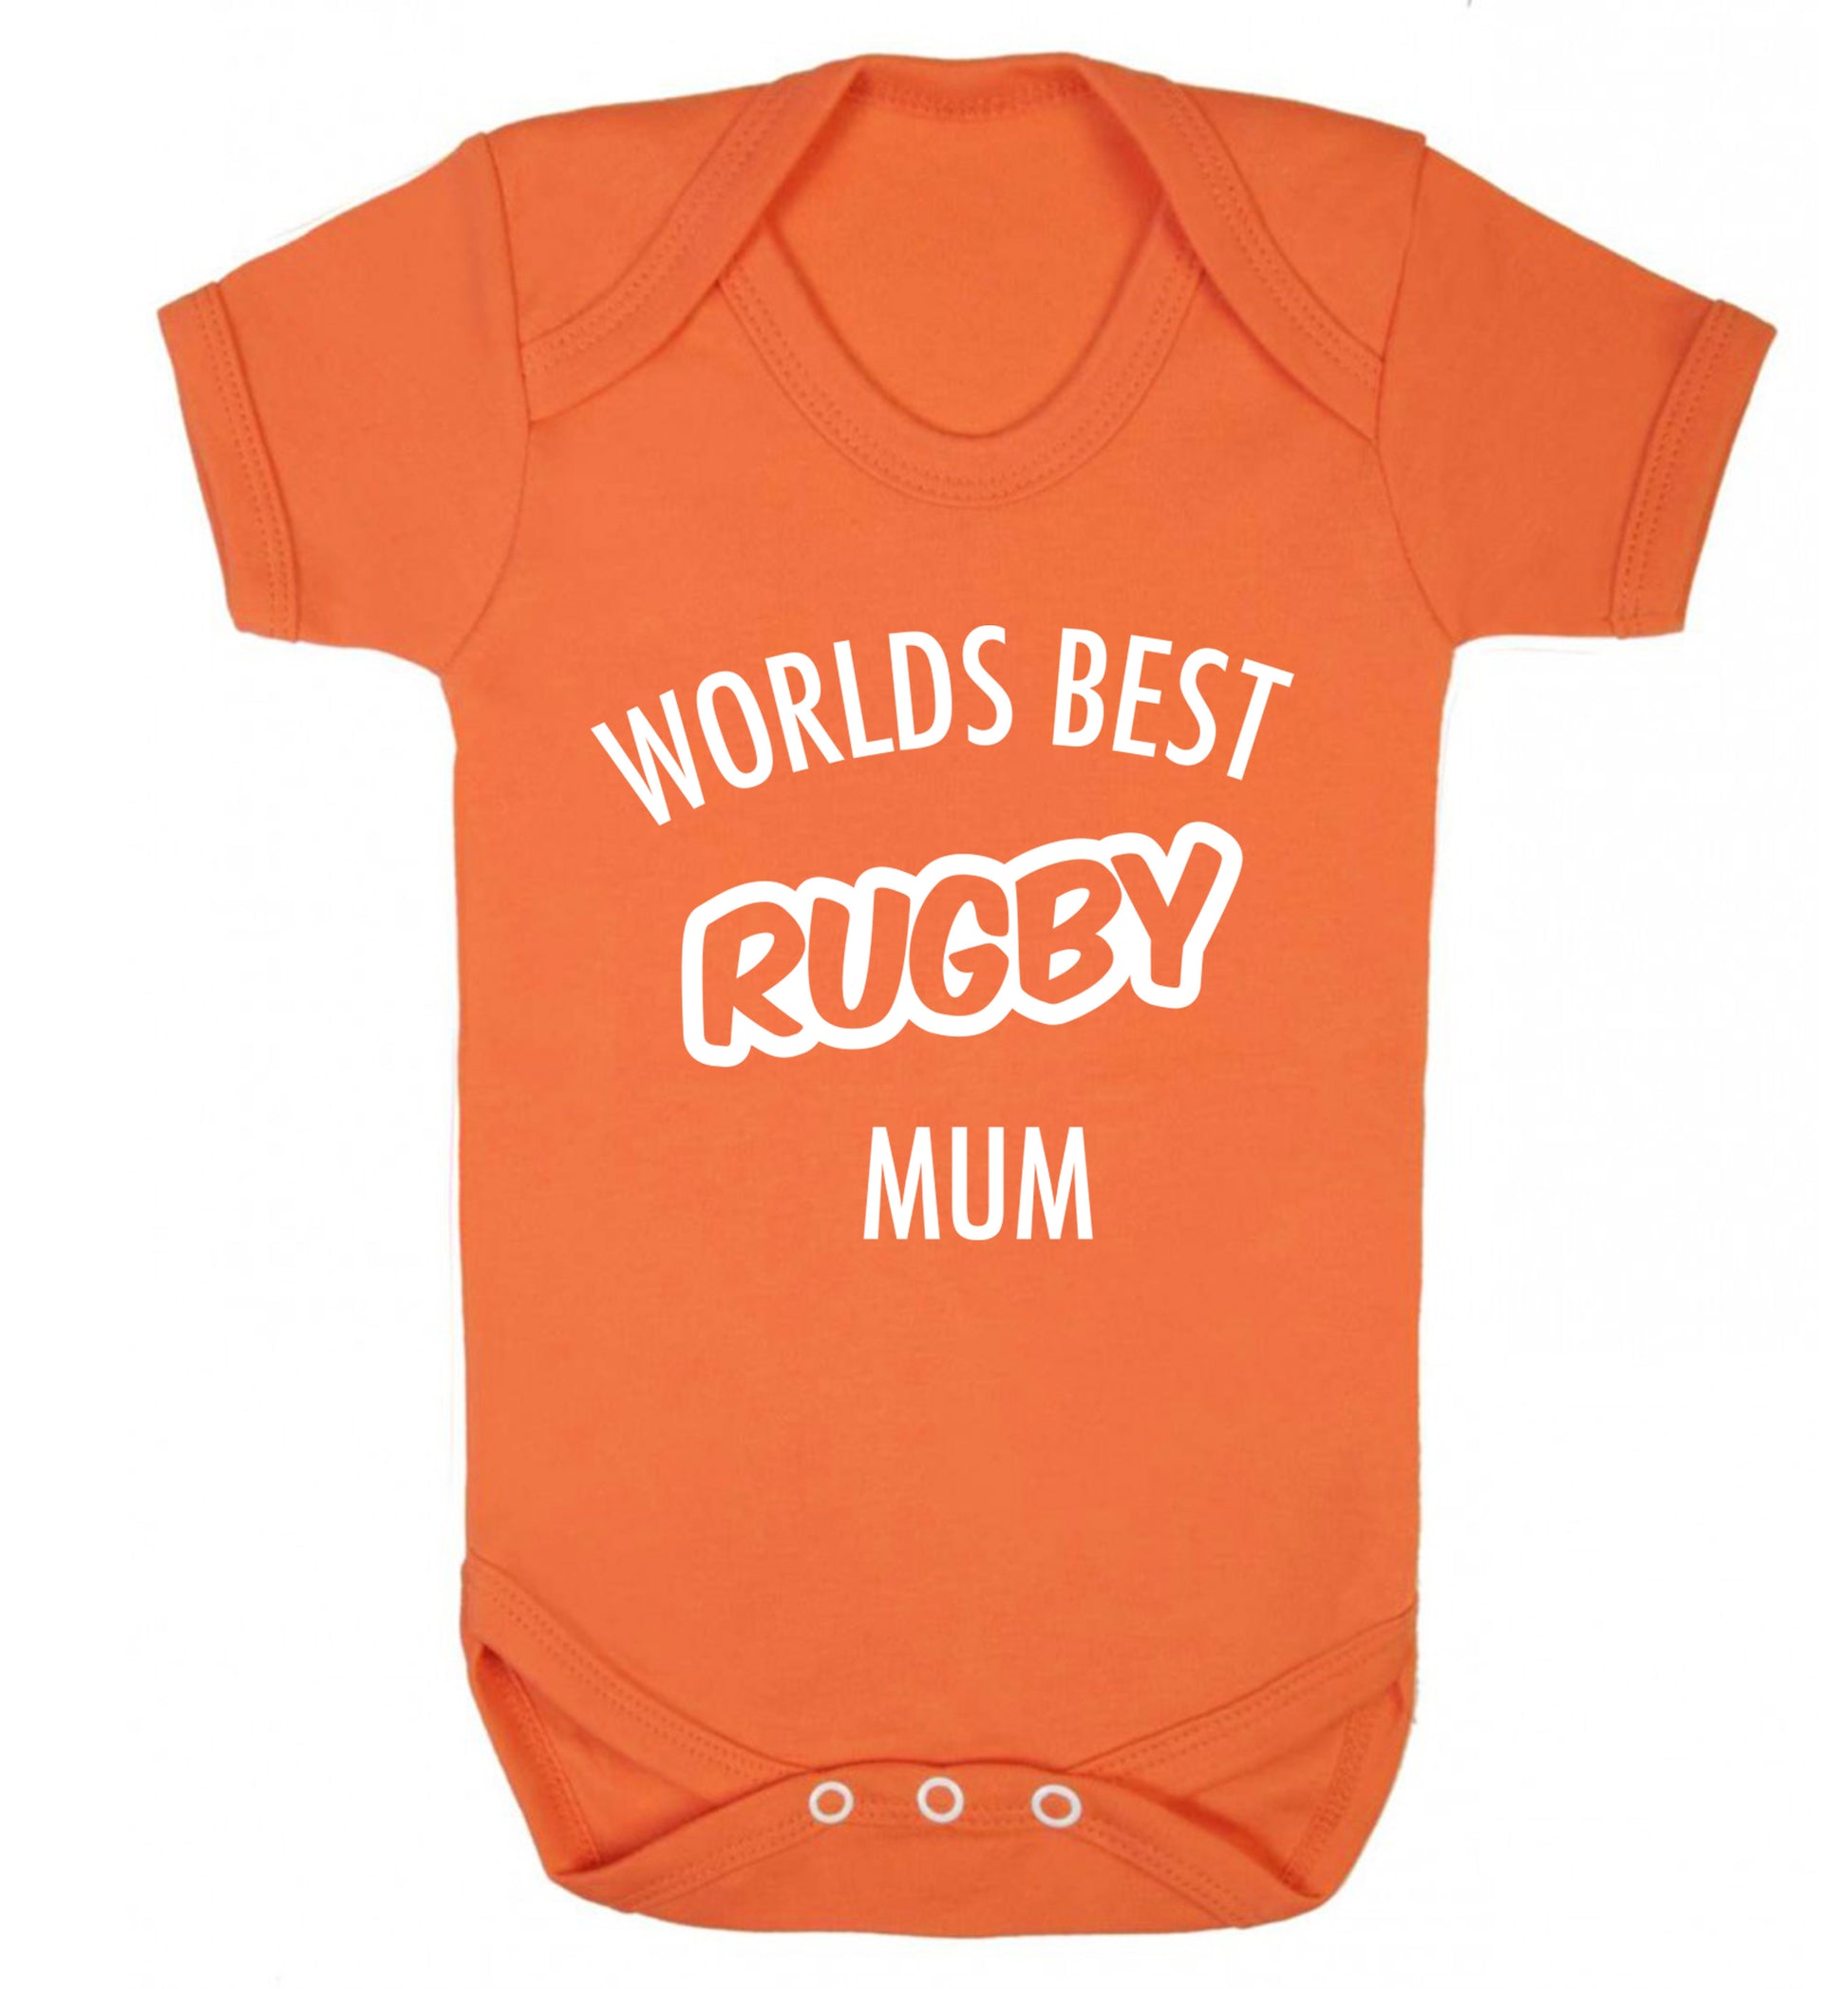 Worlds best rugby mum Baby Vest orange 18-24 months